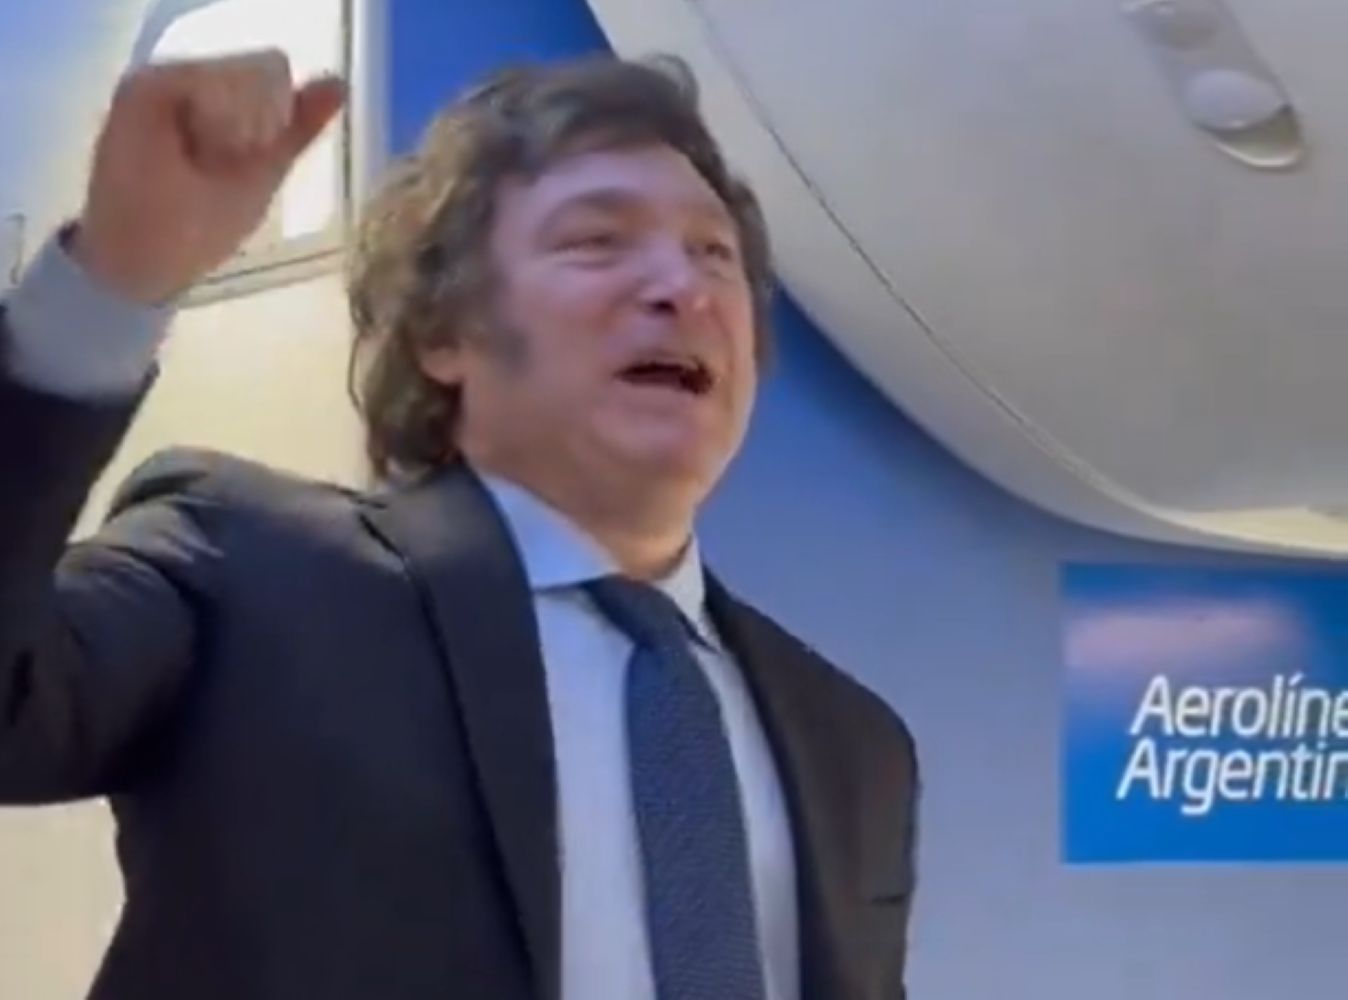 Prezydent Argentyny zaskoczył pasażerów. Zdziwienie w samolocie